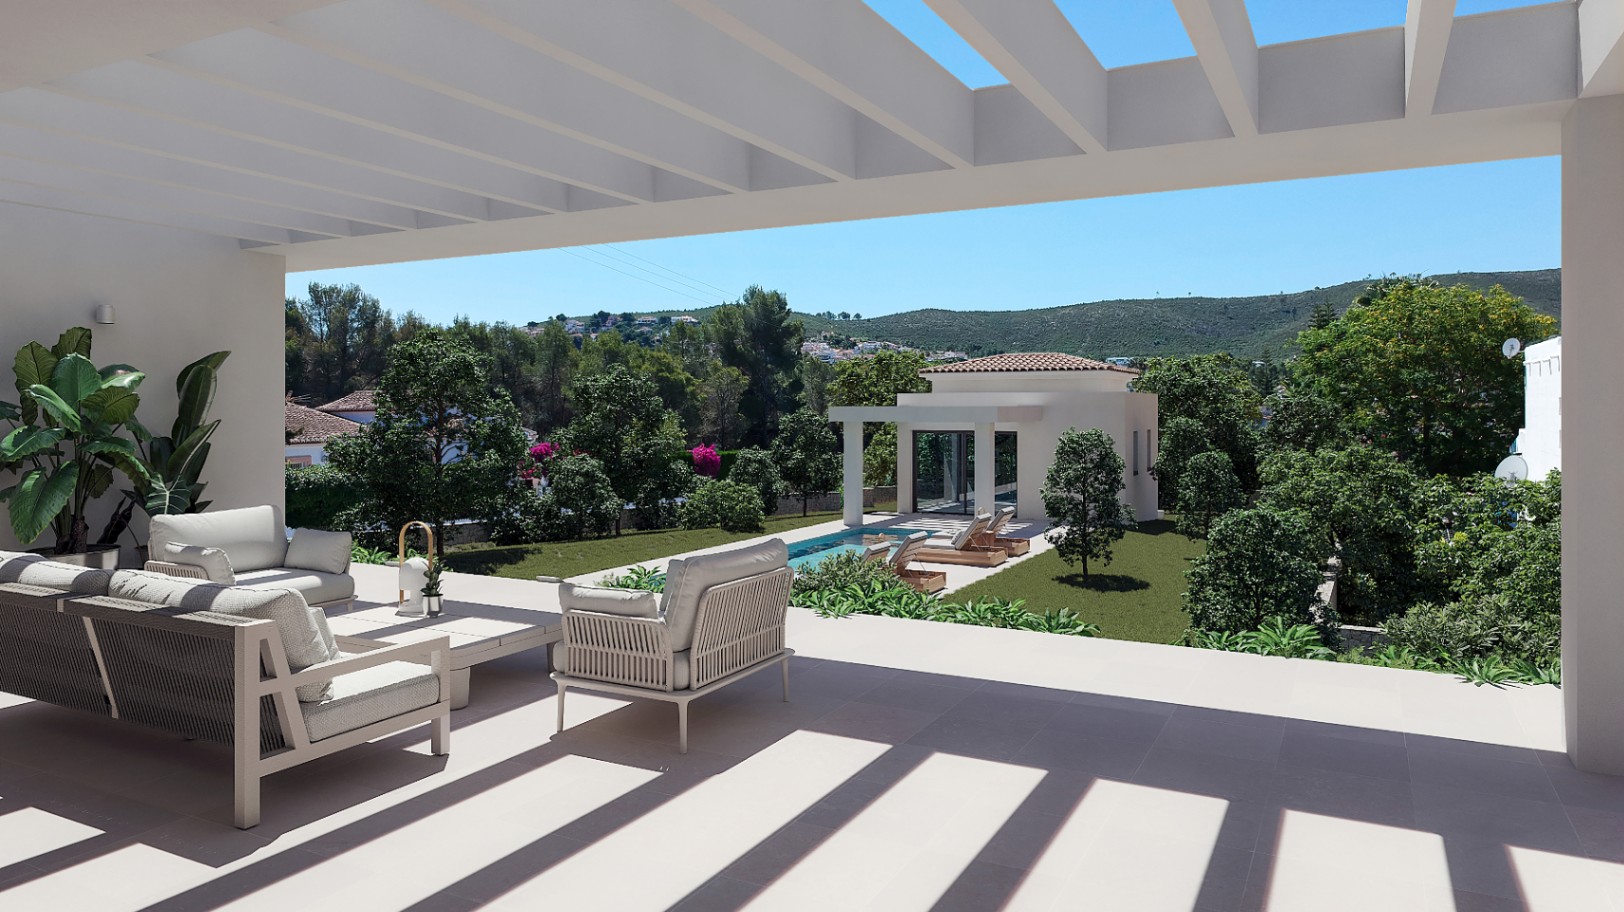 Stunning 4-bedroom luxury villa